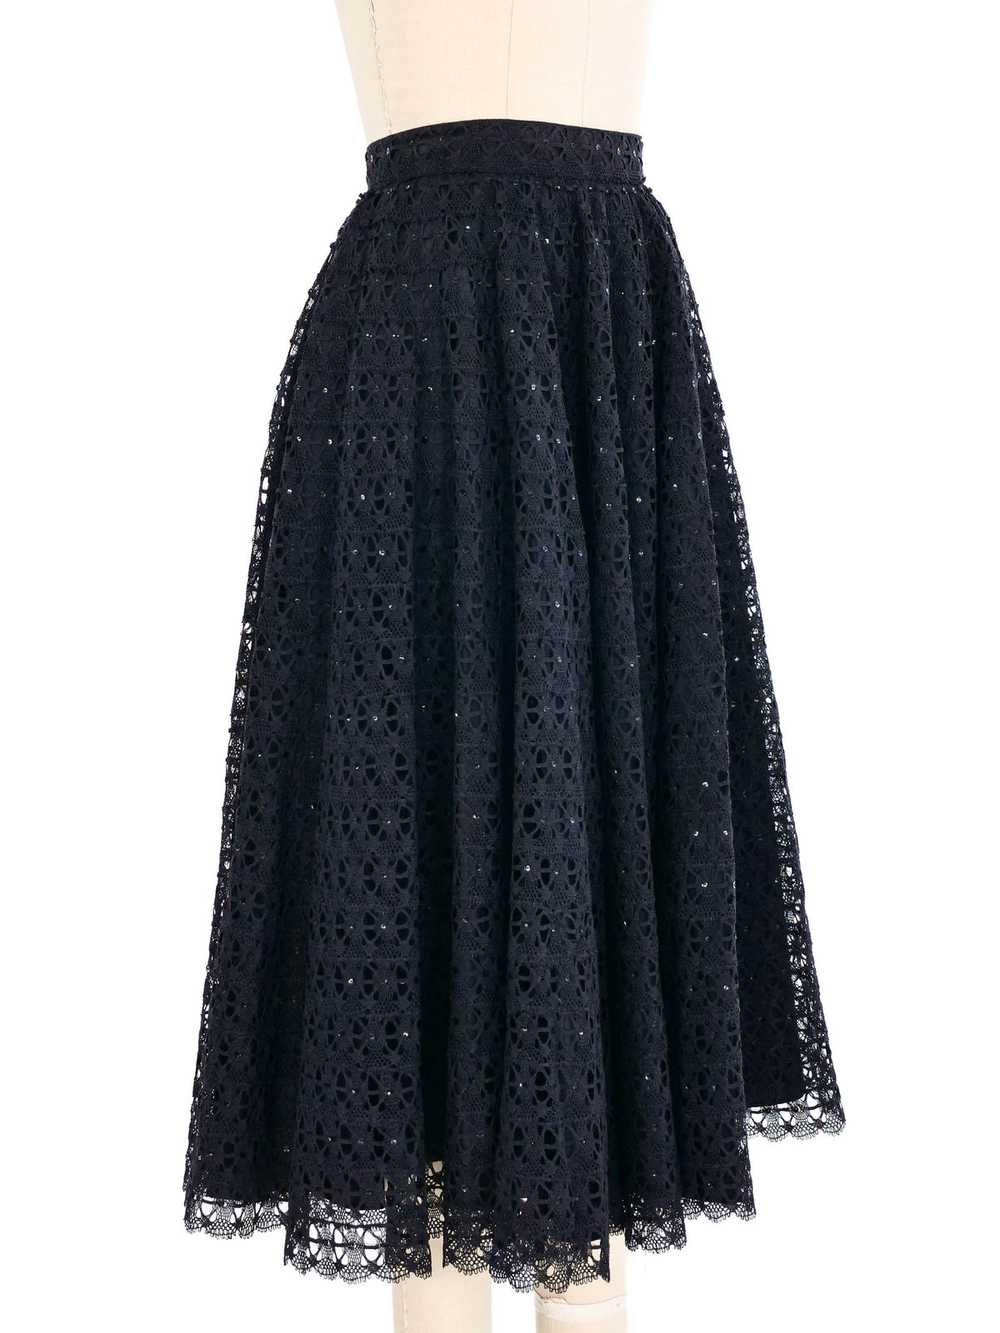 Black Embellished Lace Midi Skirt - image 7